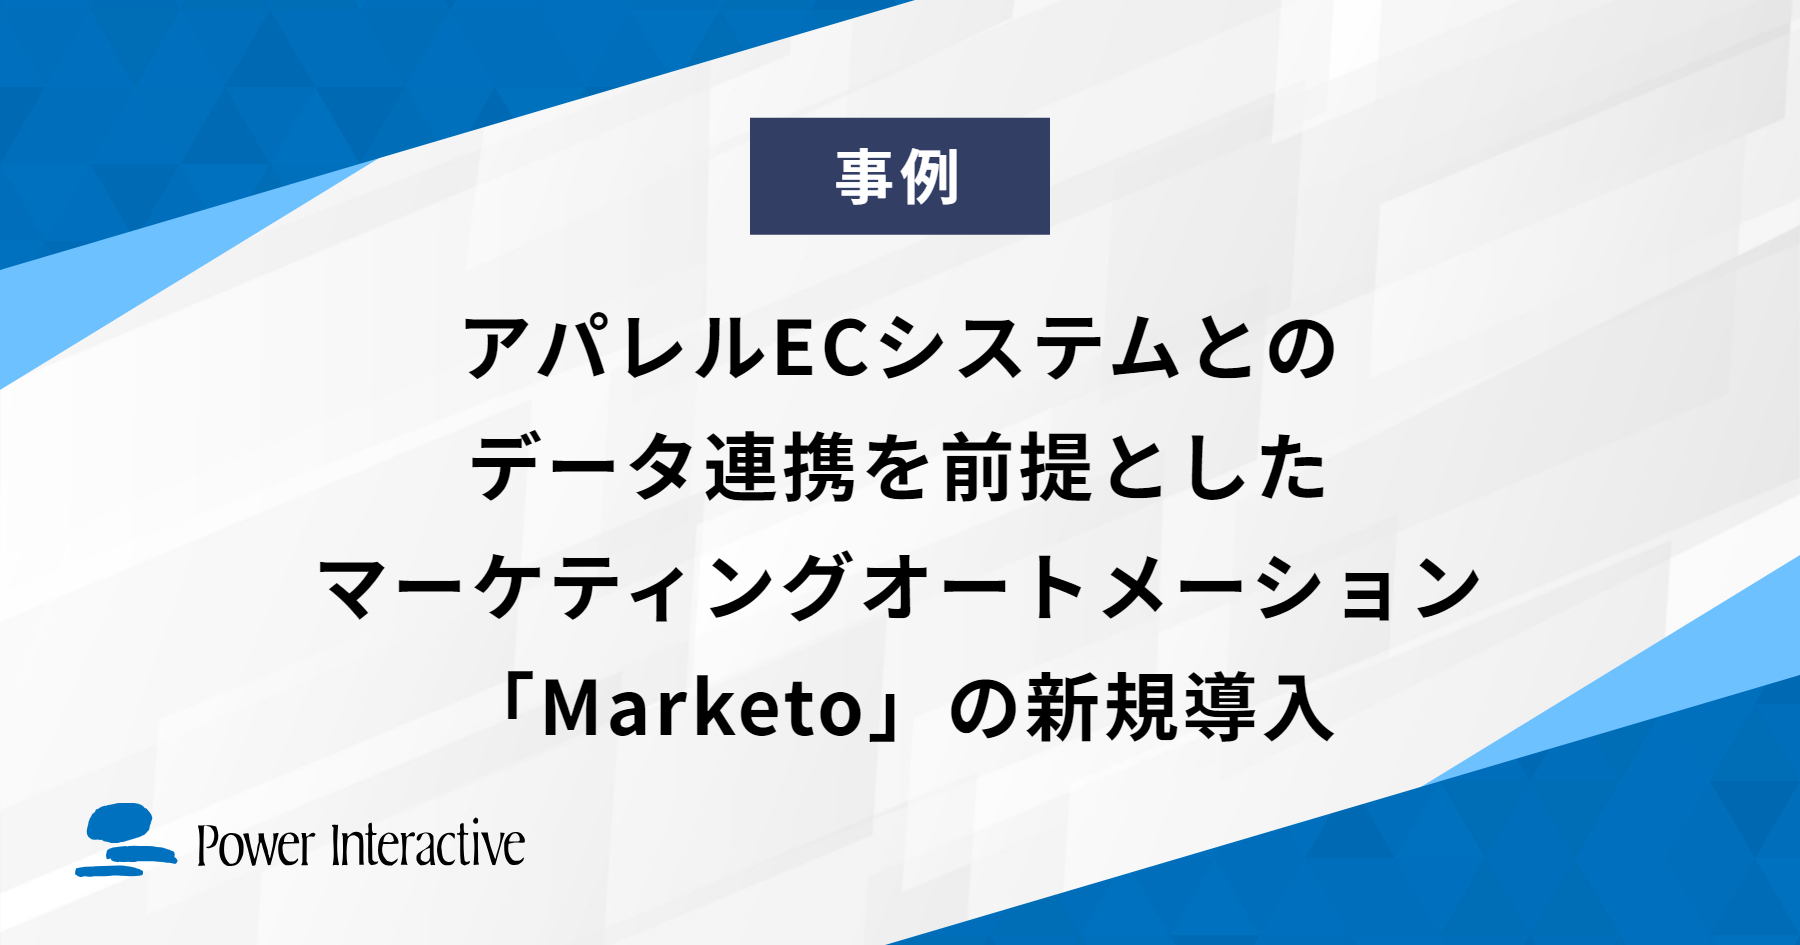 アパレルECシステムとのデータ連携を前提としたマーケティングオートメーション「Marketo」の新規導入